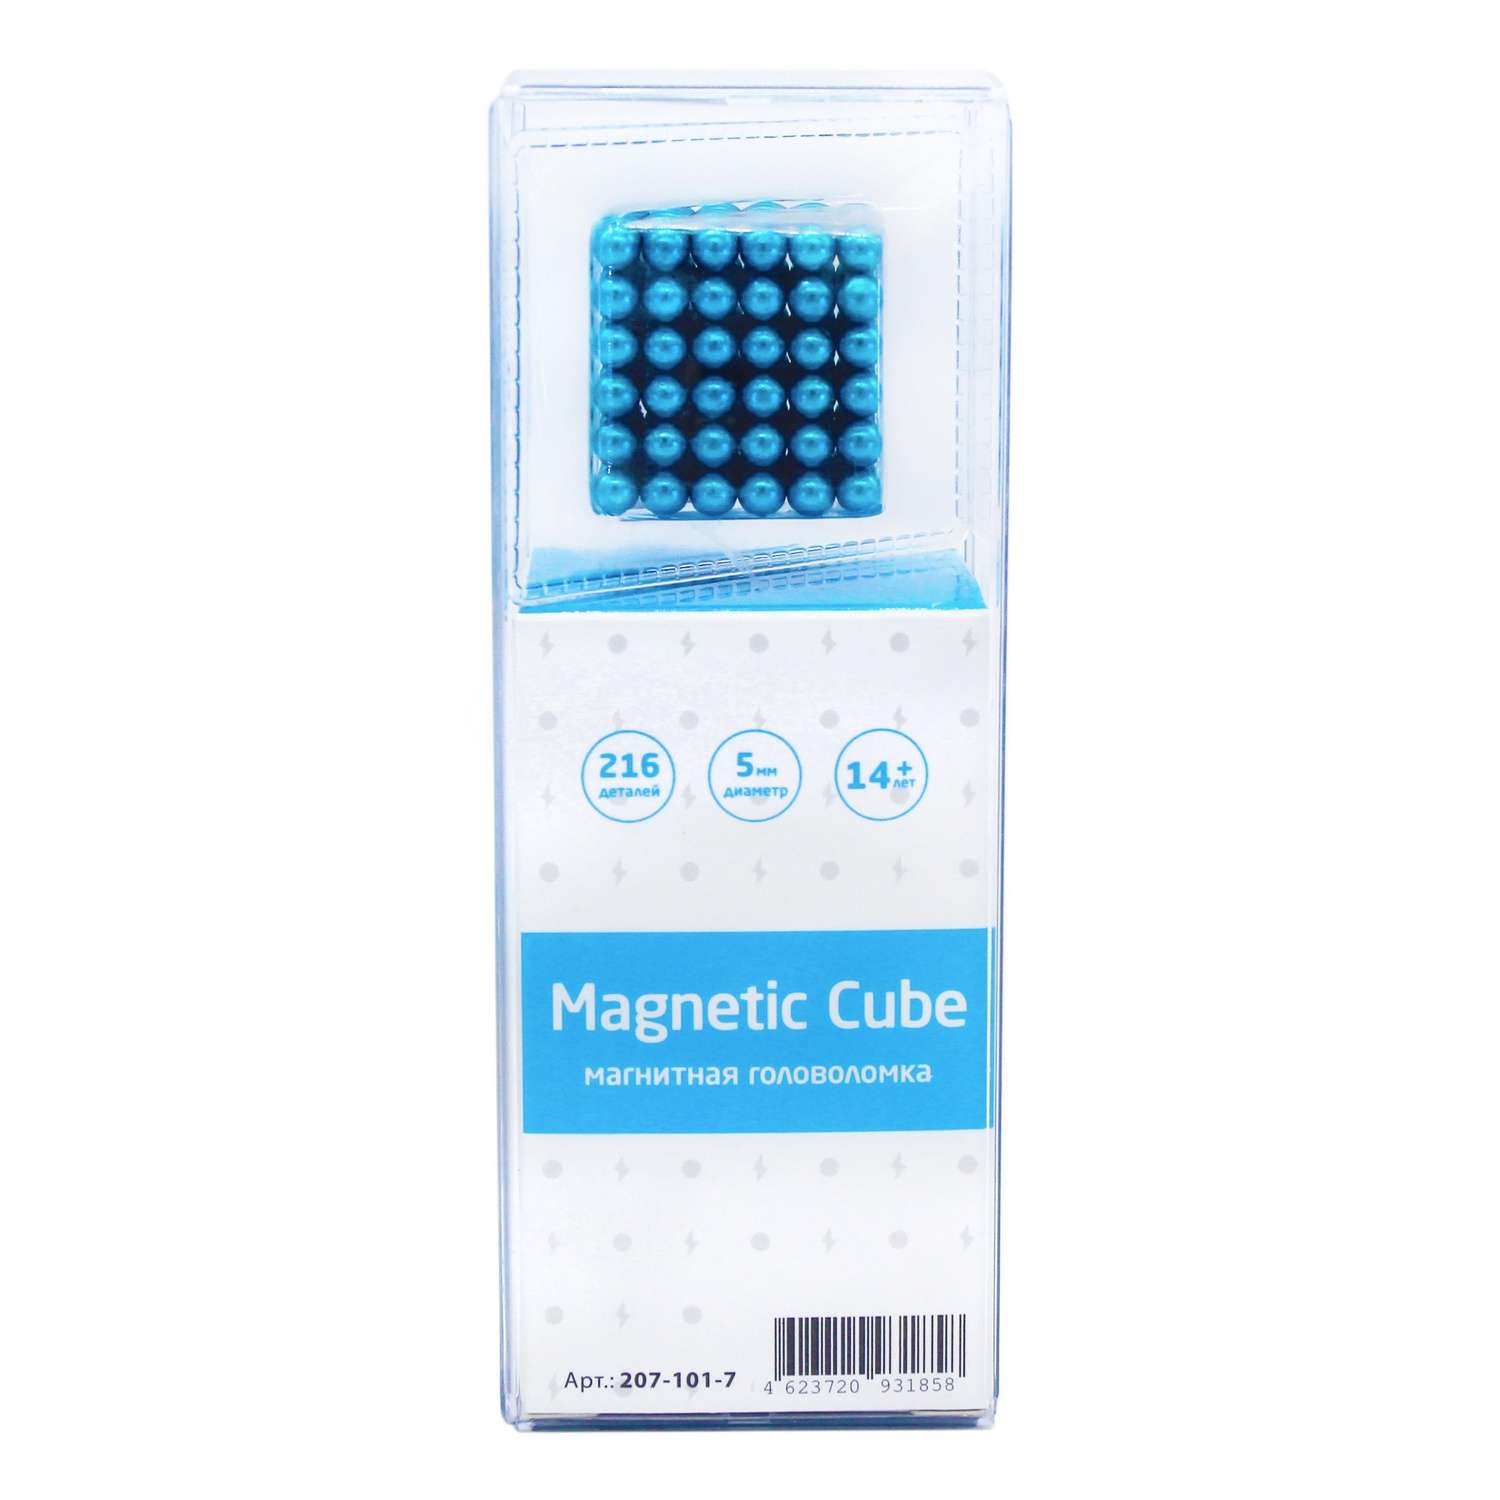 Головоломка магнитная Magnetic Cube голубой неокуб 216 элементов - фото 3